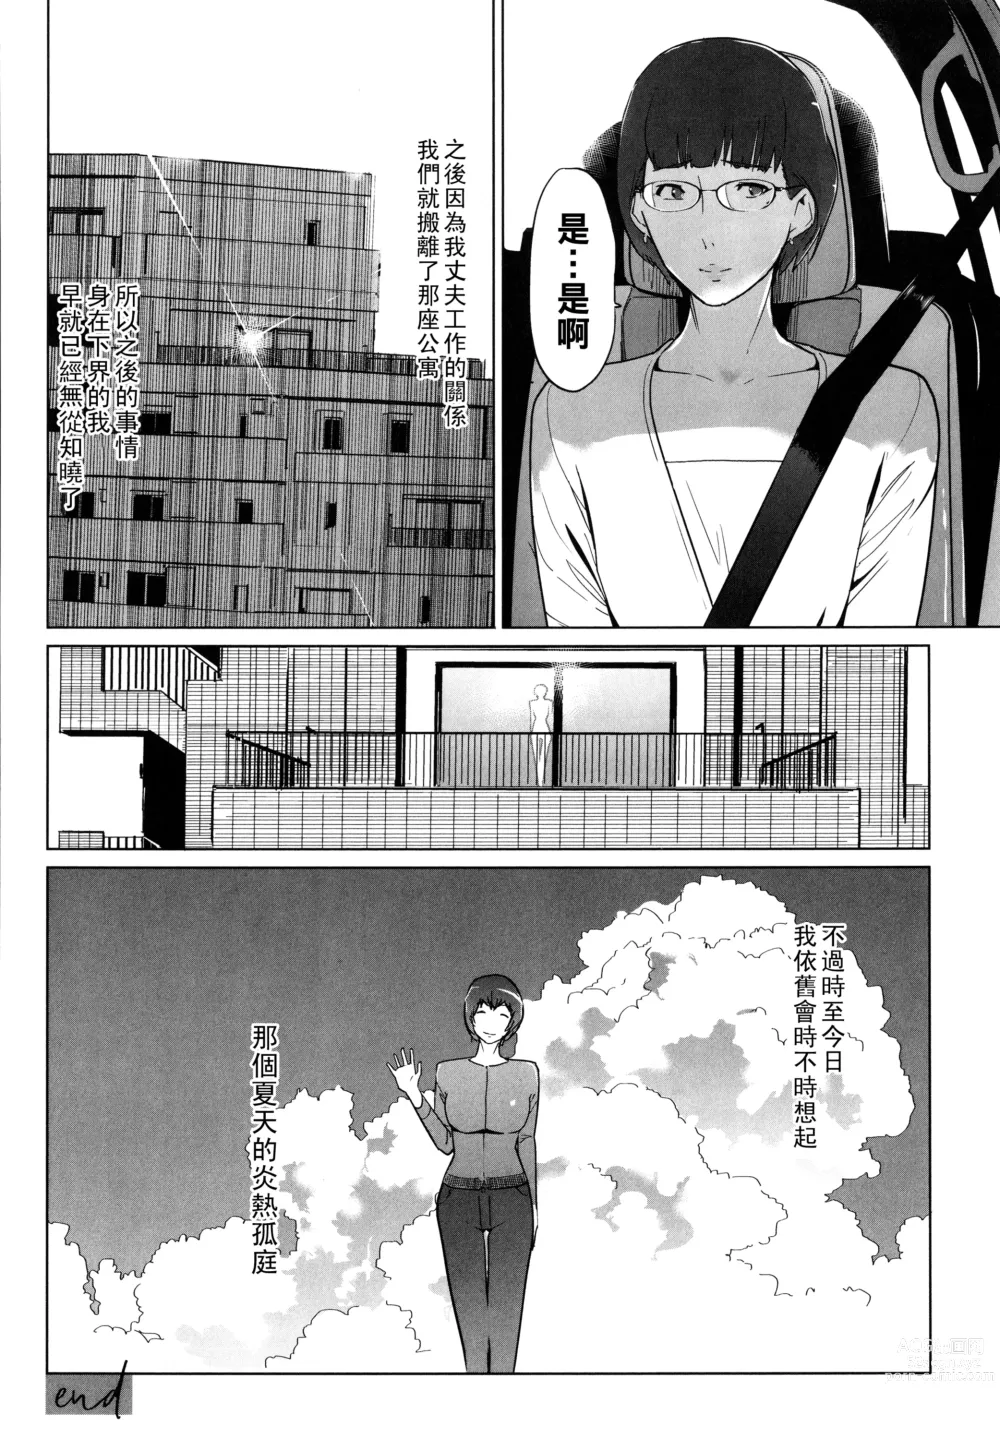 Page 74 of manga Natsu no Su